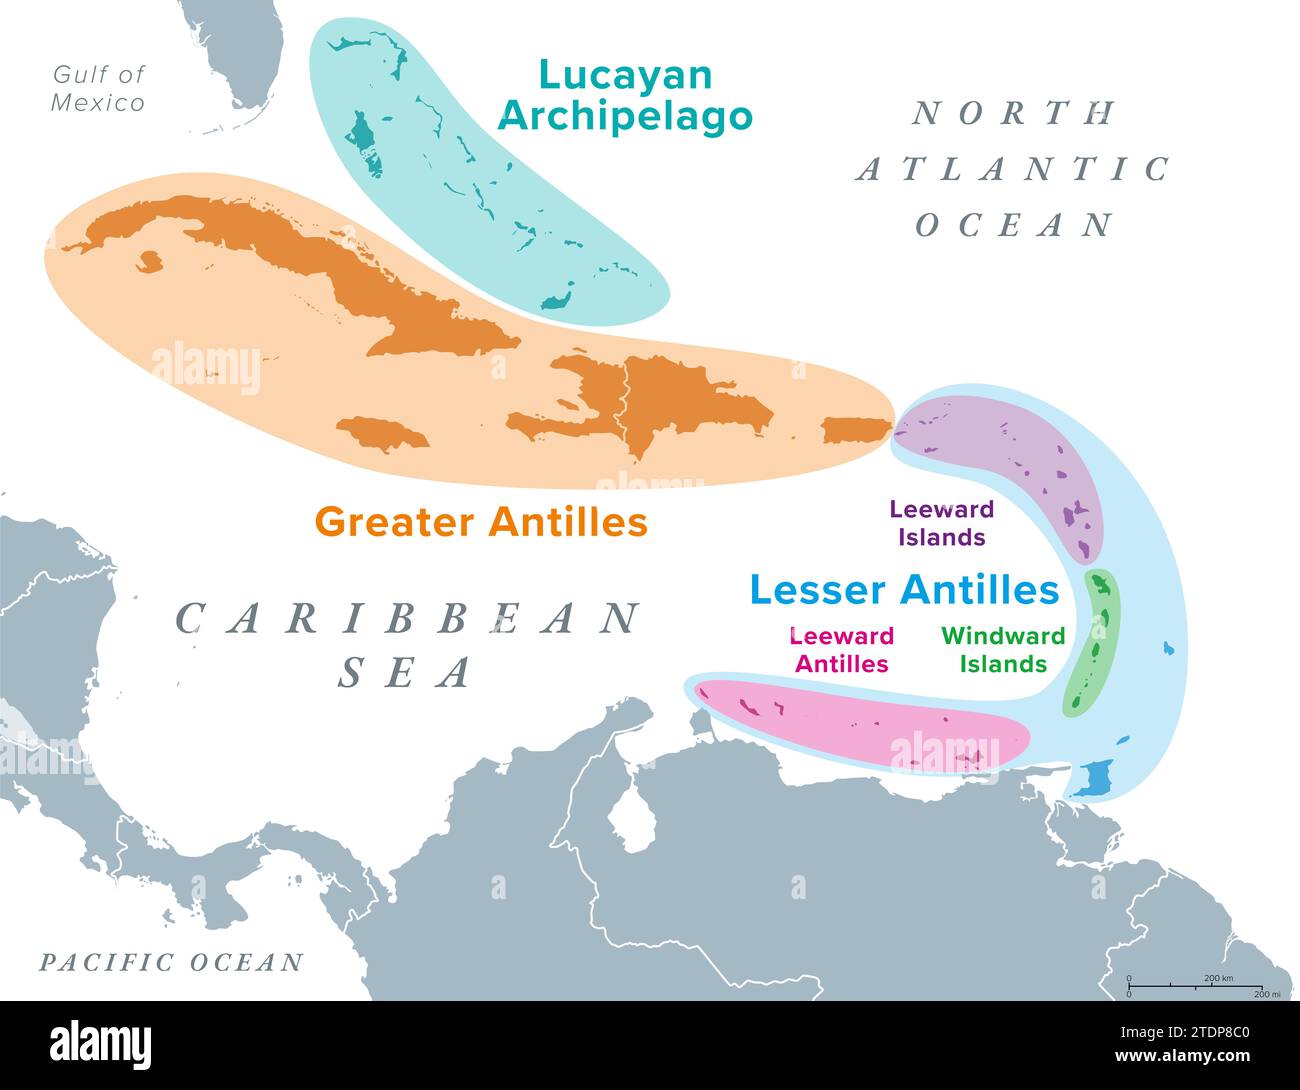 Groupes d'îles des Antilles, carte politique. Sous-région des Amériques, entourée par l'océan Atlantique Nord et la mer des Caraïbes. Banque D'Images